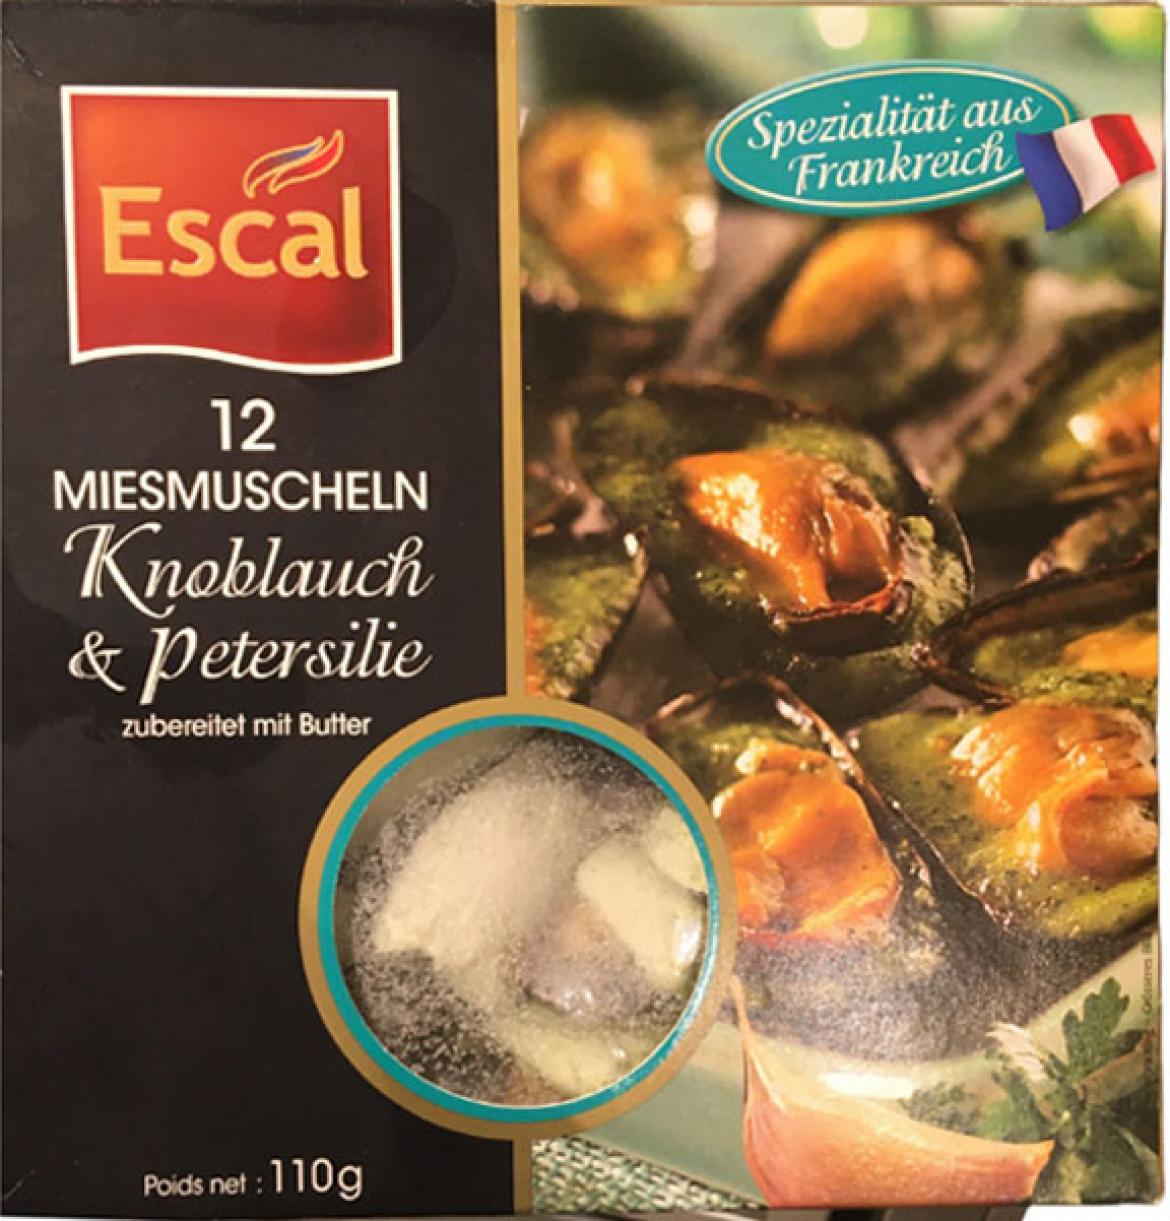 Fisch: Aquakultur Escal 12 Miesmuscheln (2021)